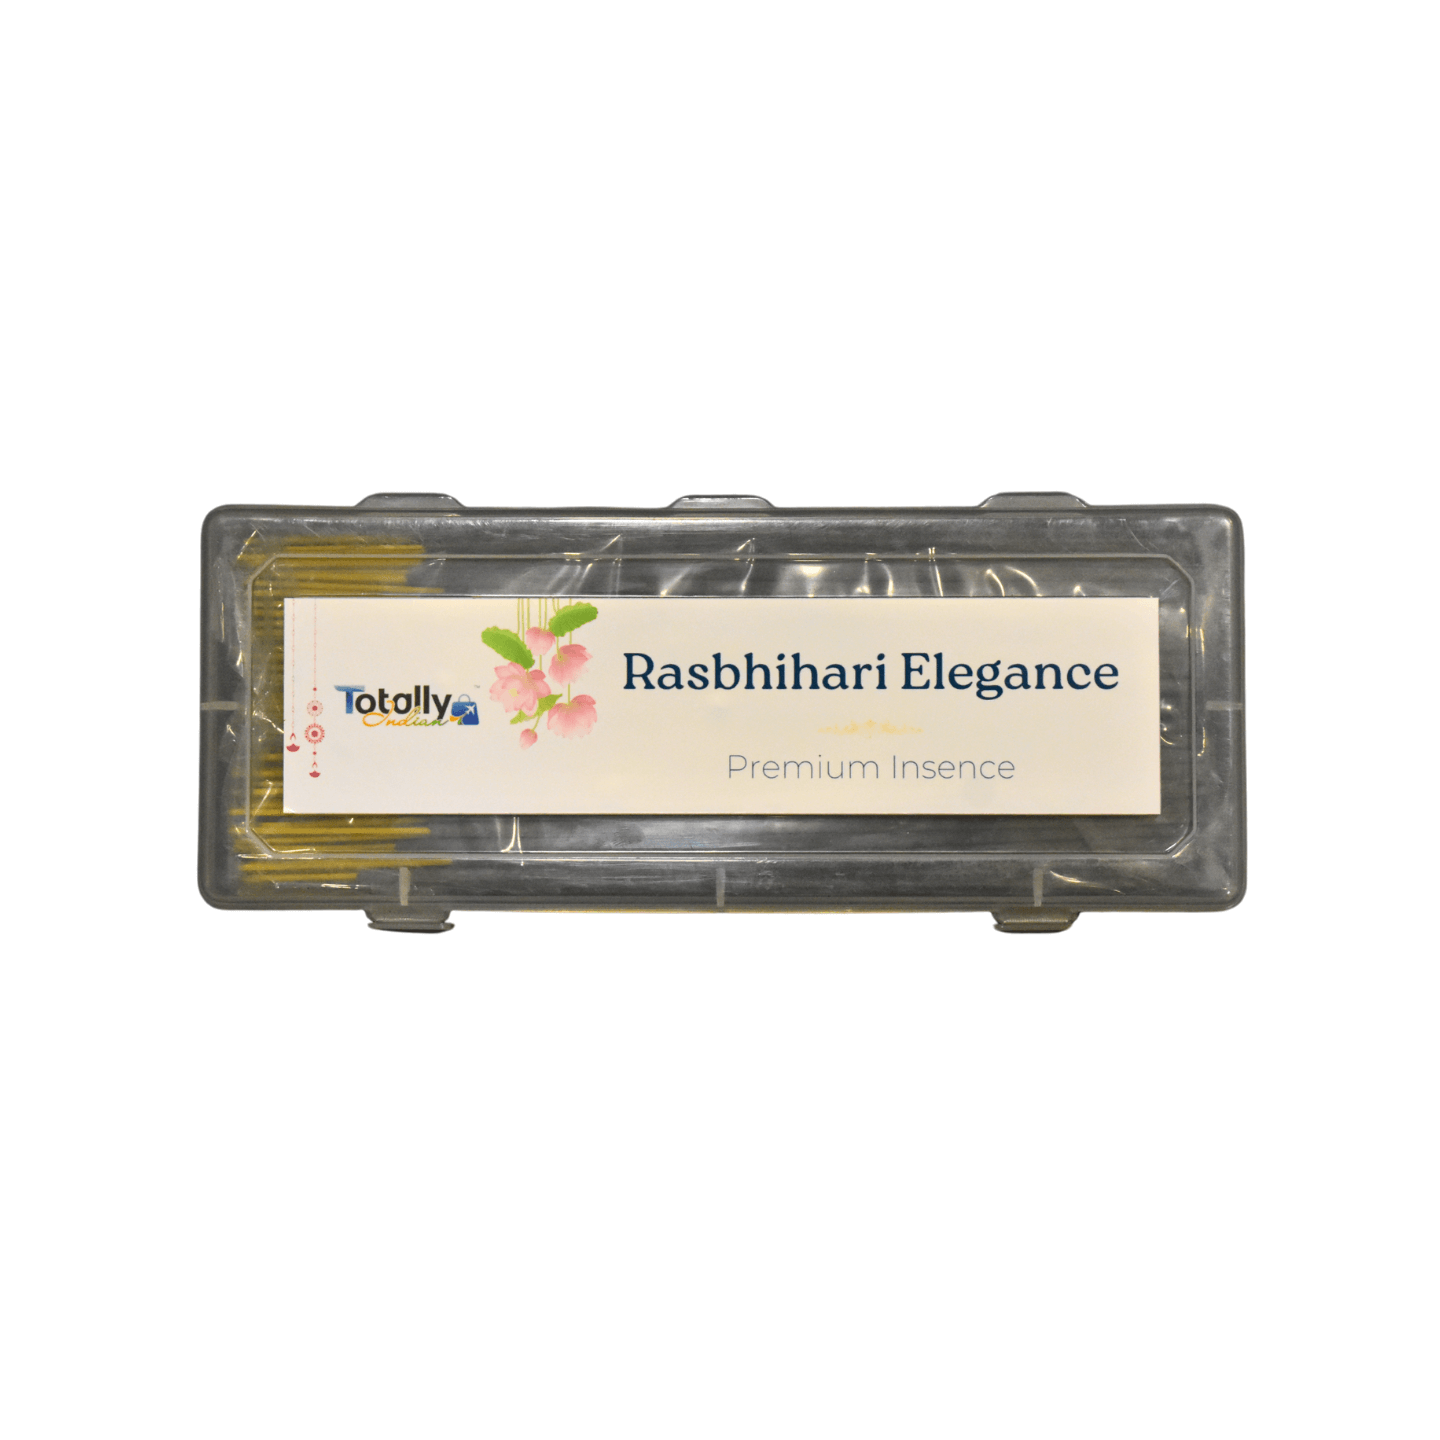 Smoke-less Premium Masala Incense | Rasbhihari Elegance - Totally Indian